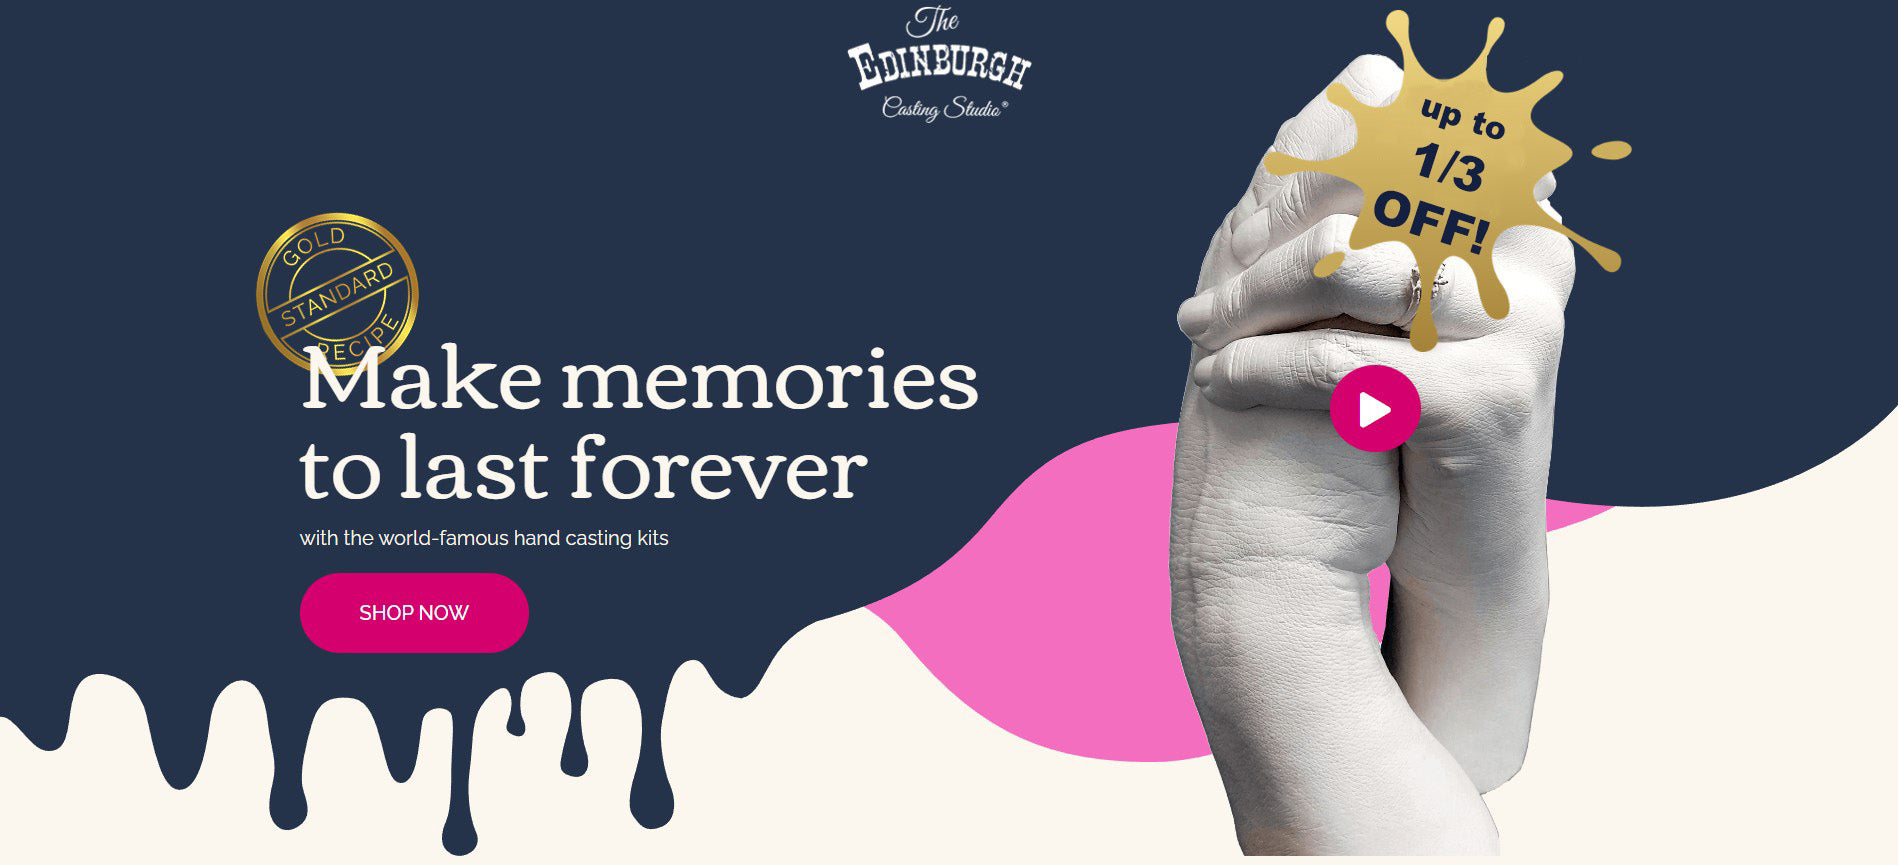 Endinburgh Casting Studio - Make Memories Last Forever